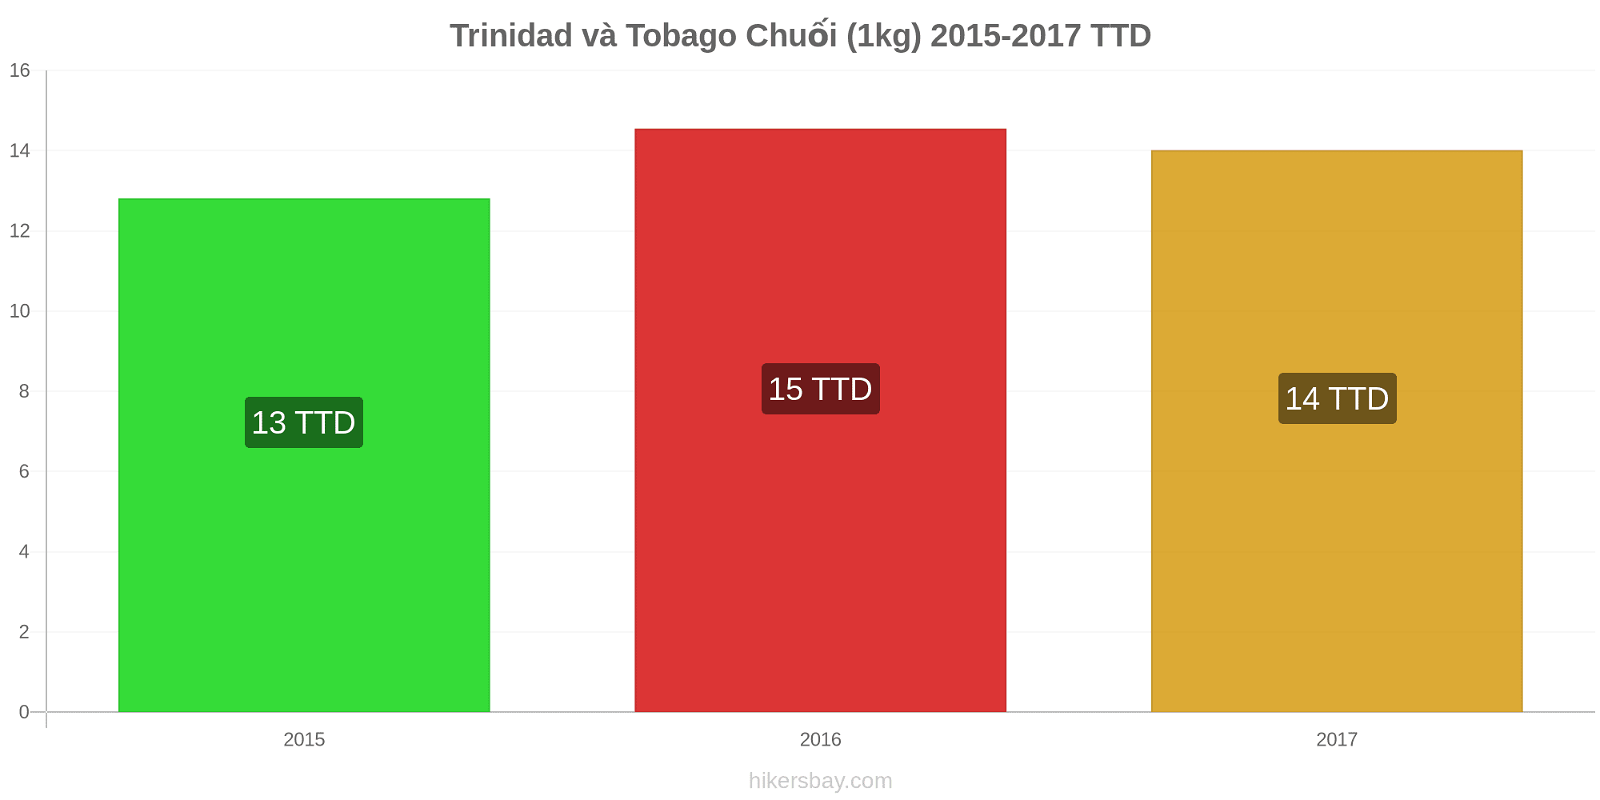 Trinidad và Tobago thay đổi giá cả Chuối (1kg) hikersbay.com